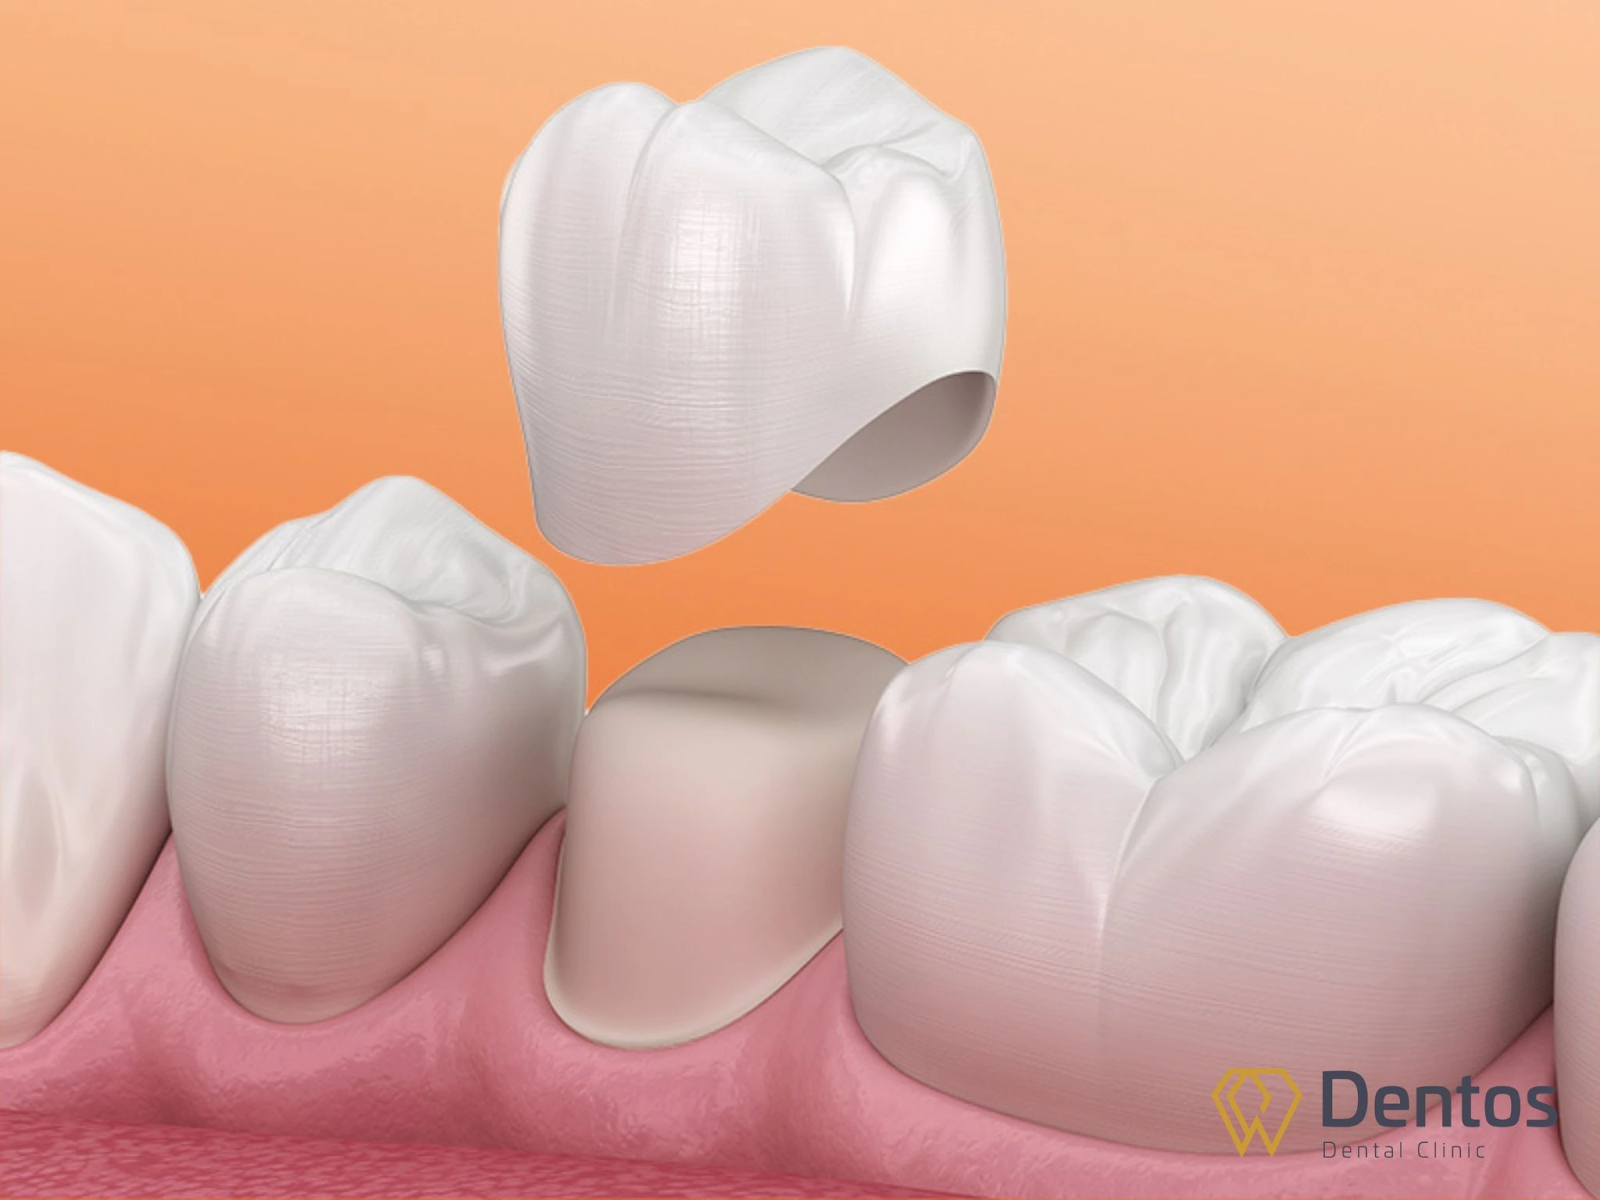 Hiểu về bọc răng sứ - Quy trình bọc răng sứ mất bao lâu?